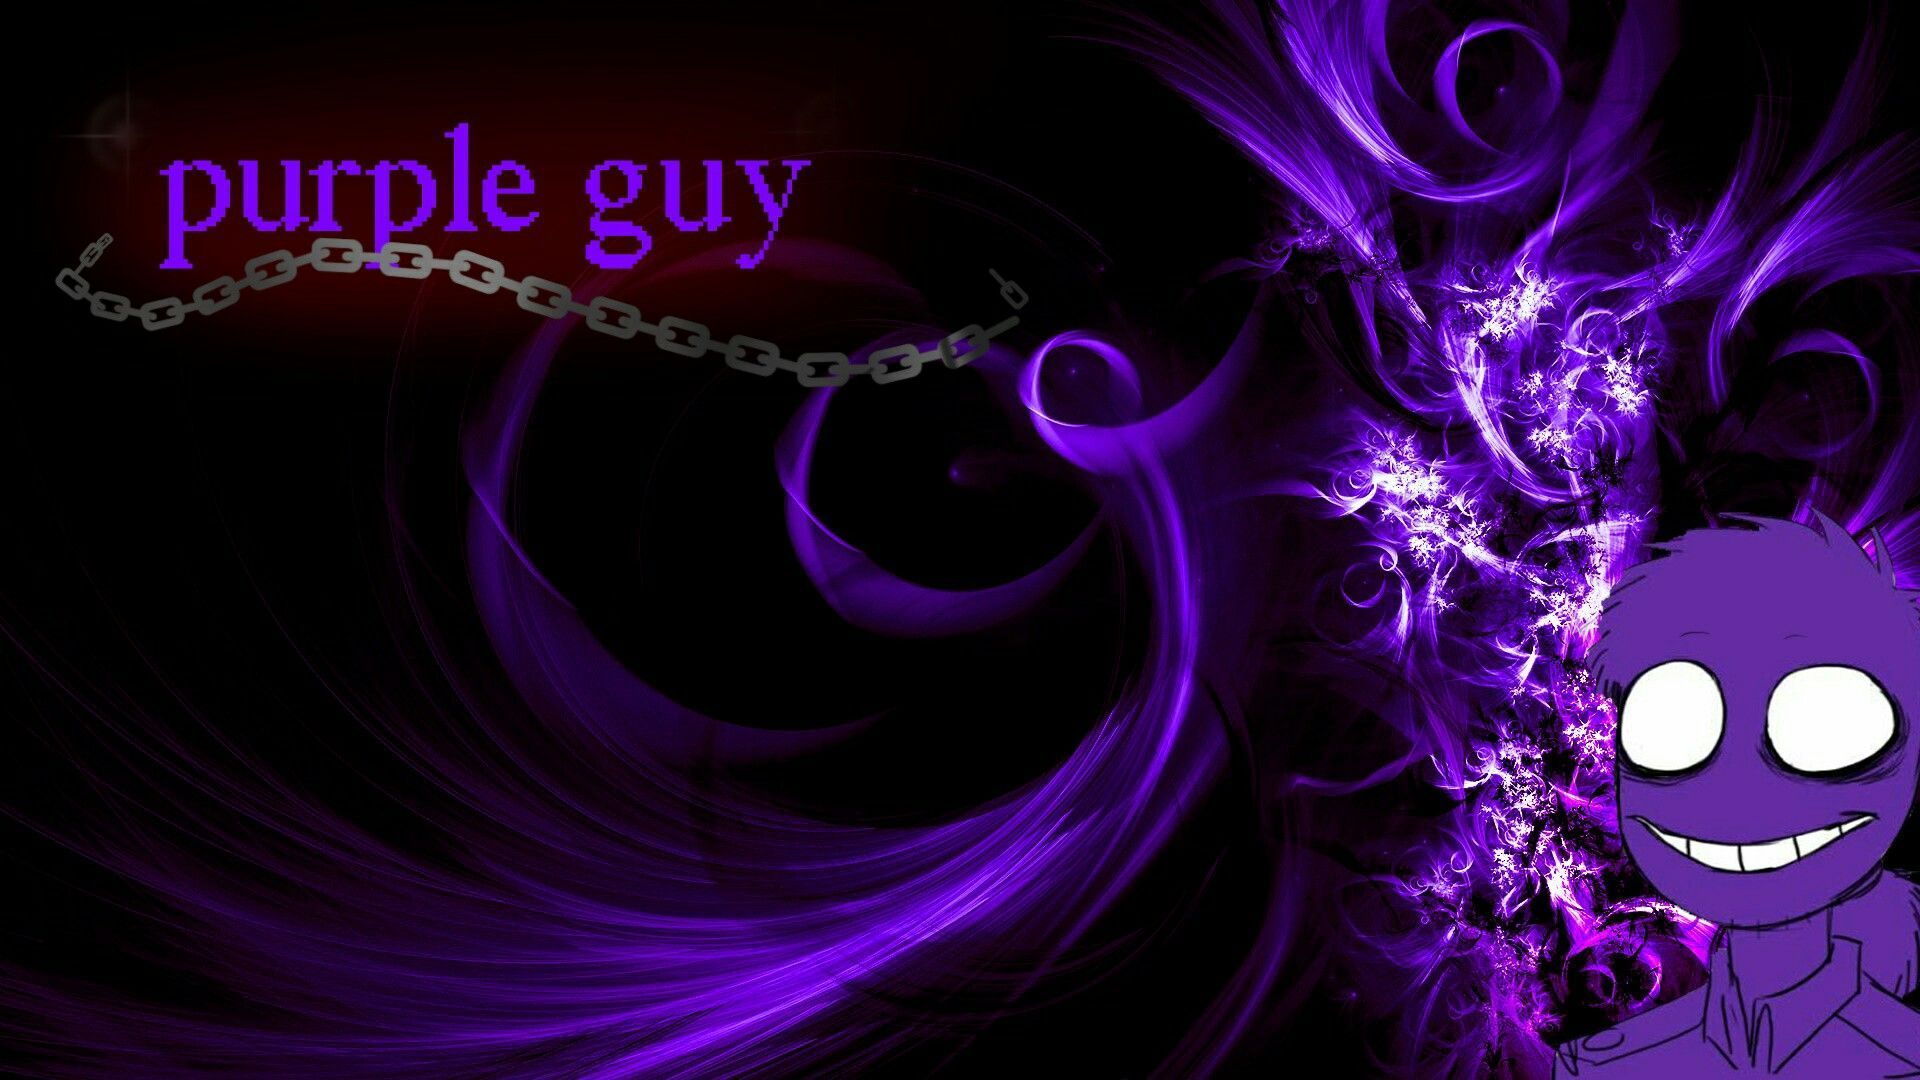 Purple guy wallpaper. Purple wallpaper, Abstract wallpaper